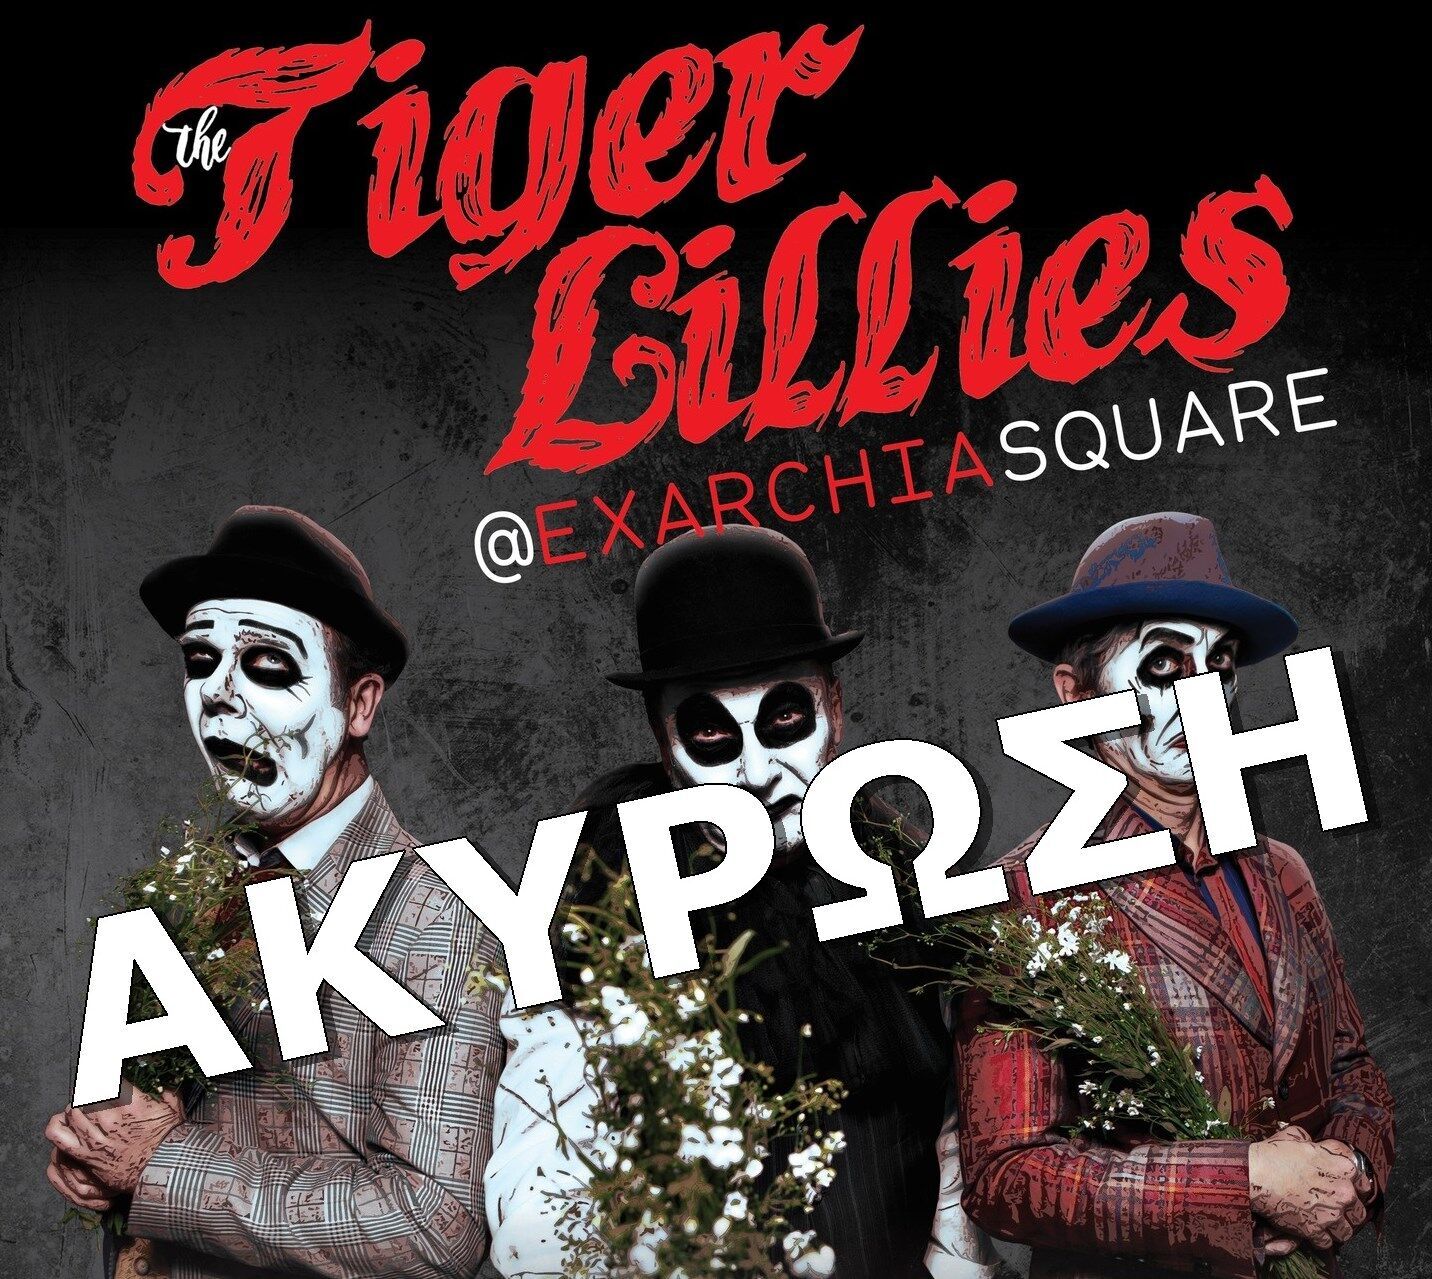 Через підтримку України: у Греції скасували концерт британського гурту The Tiger Lillies